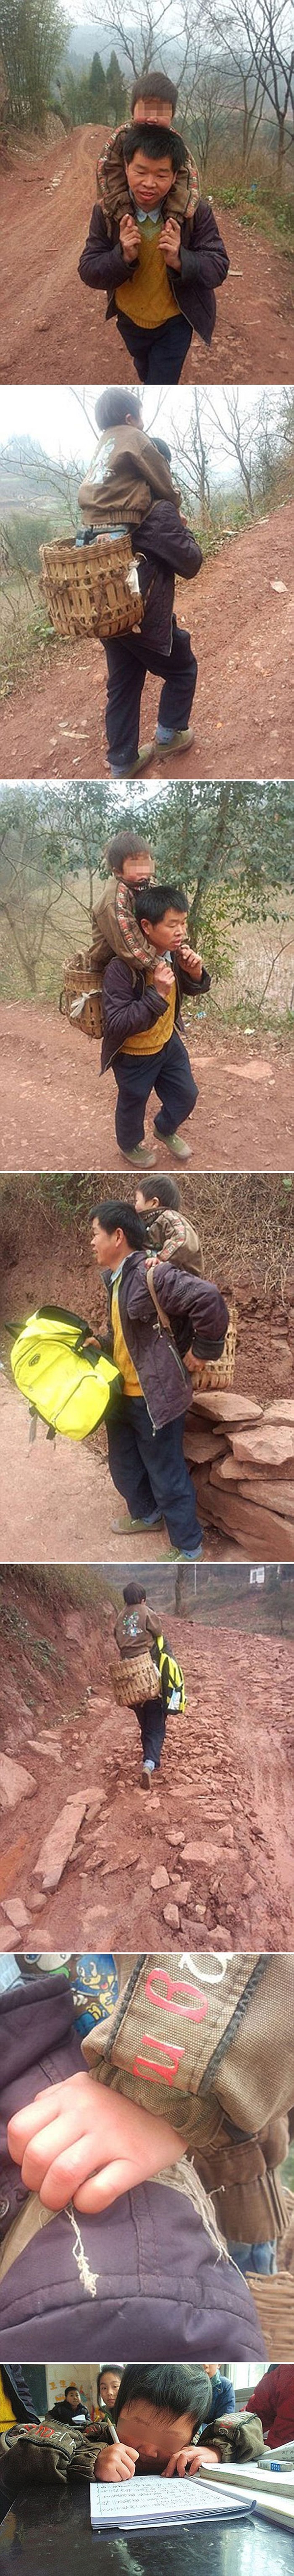 Kinez svaki dan hoda dodatnih 29 kilometara kako bi mu hendikepirani sin mogao ići u školu